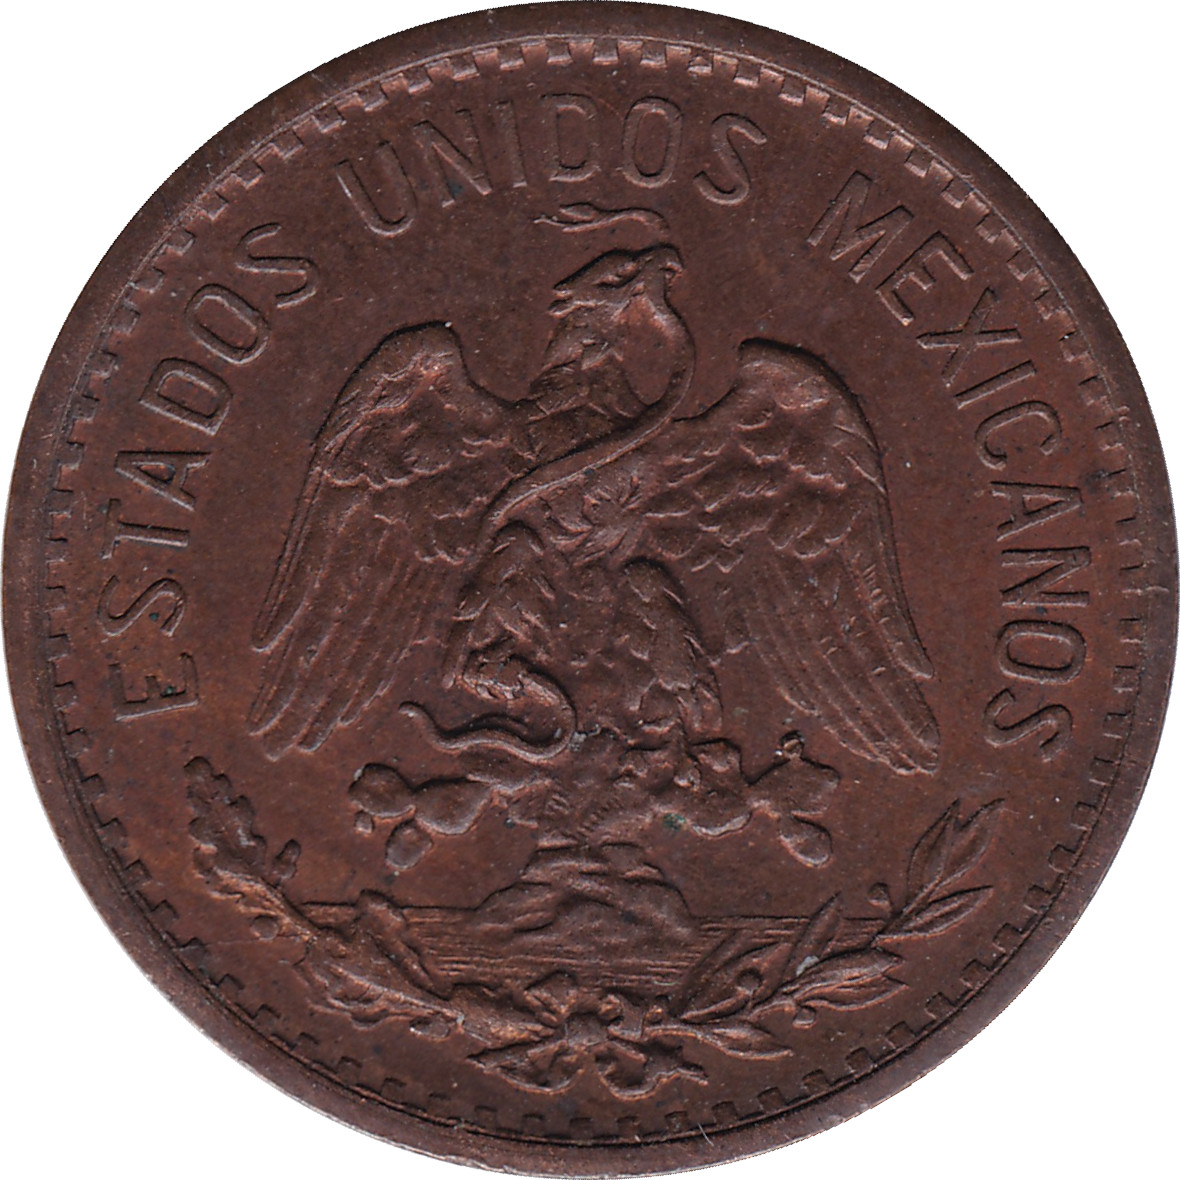 2 centavos - Aigle de face